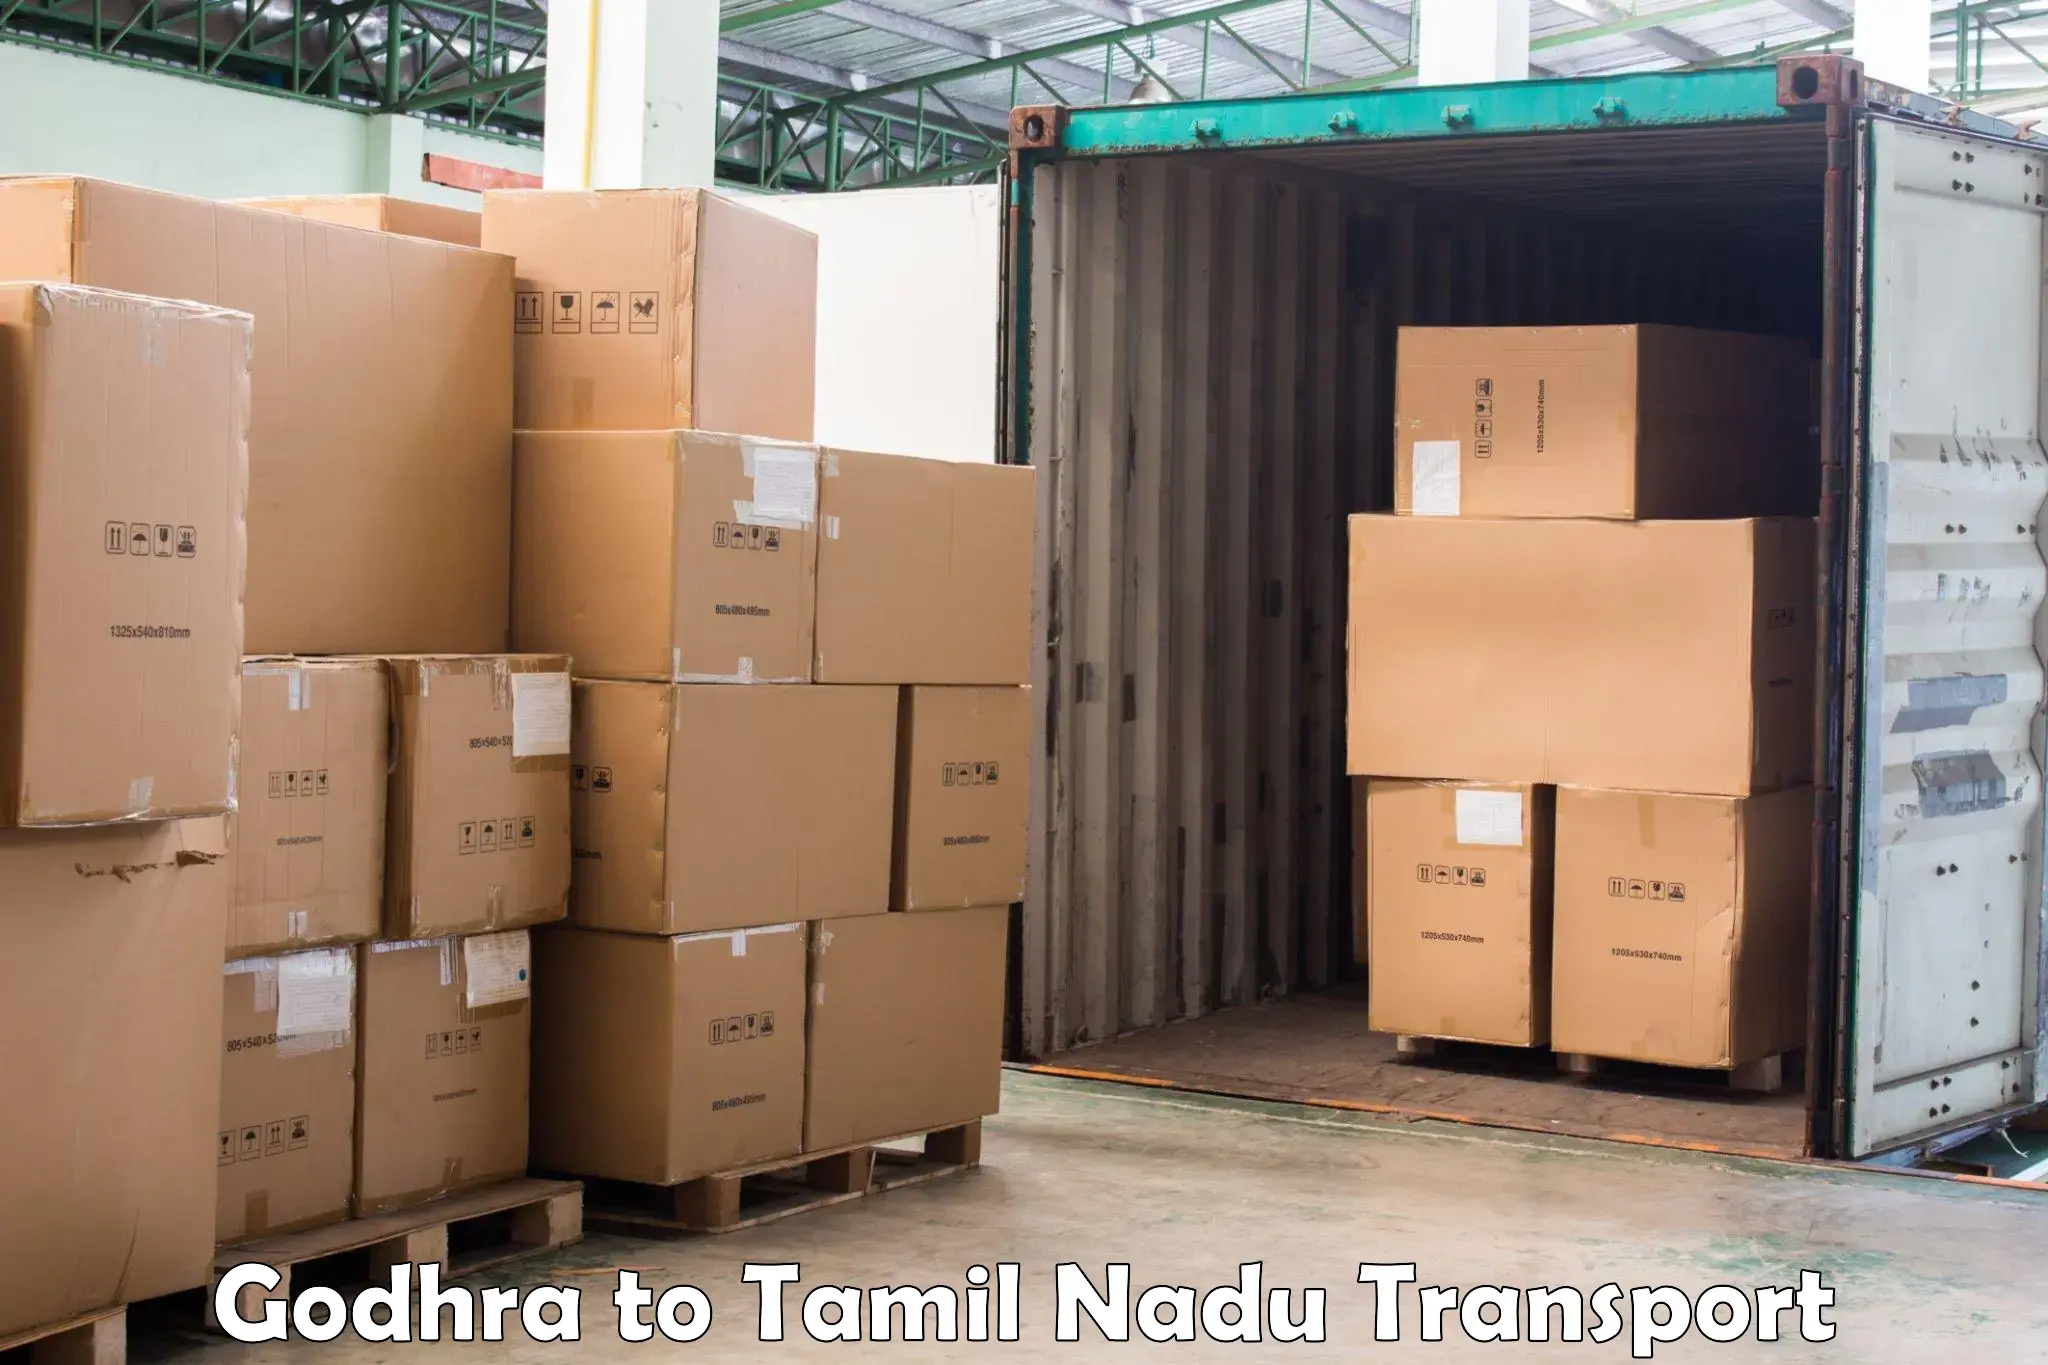 Delivery service Godhra to Tiruchengodu